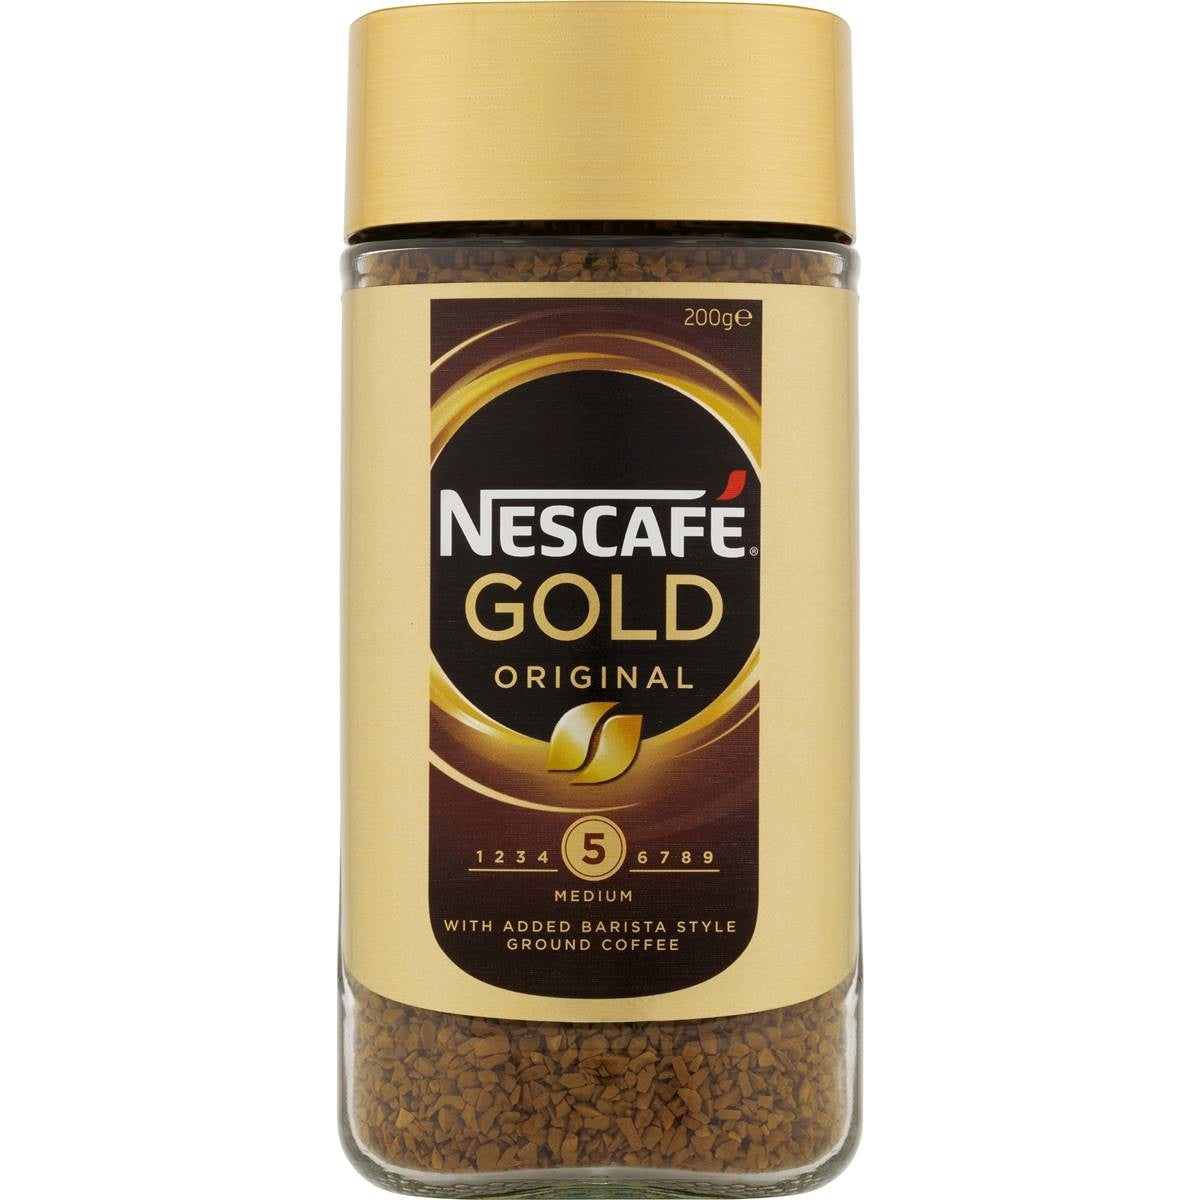 Nescafe Gold Original Coffee 200g